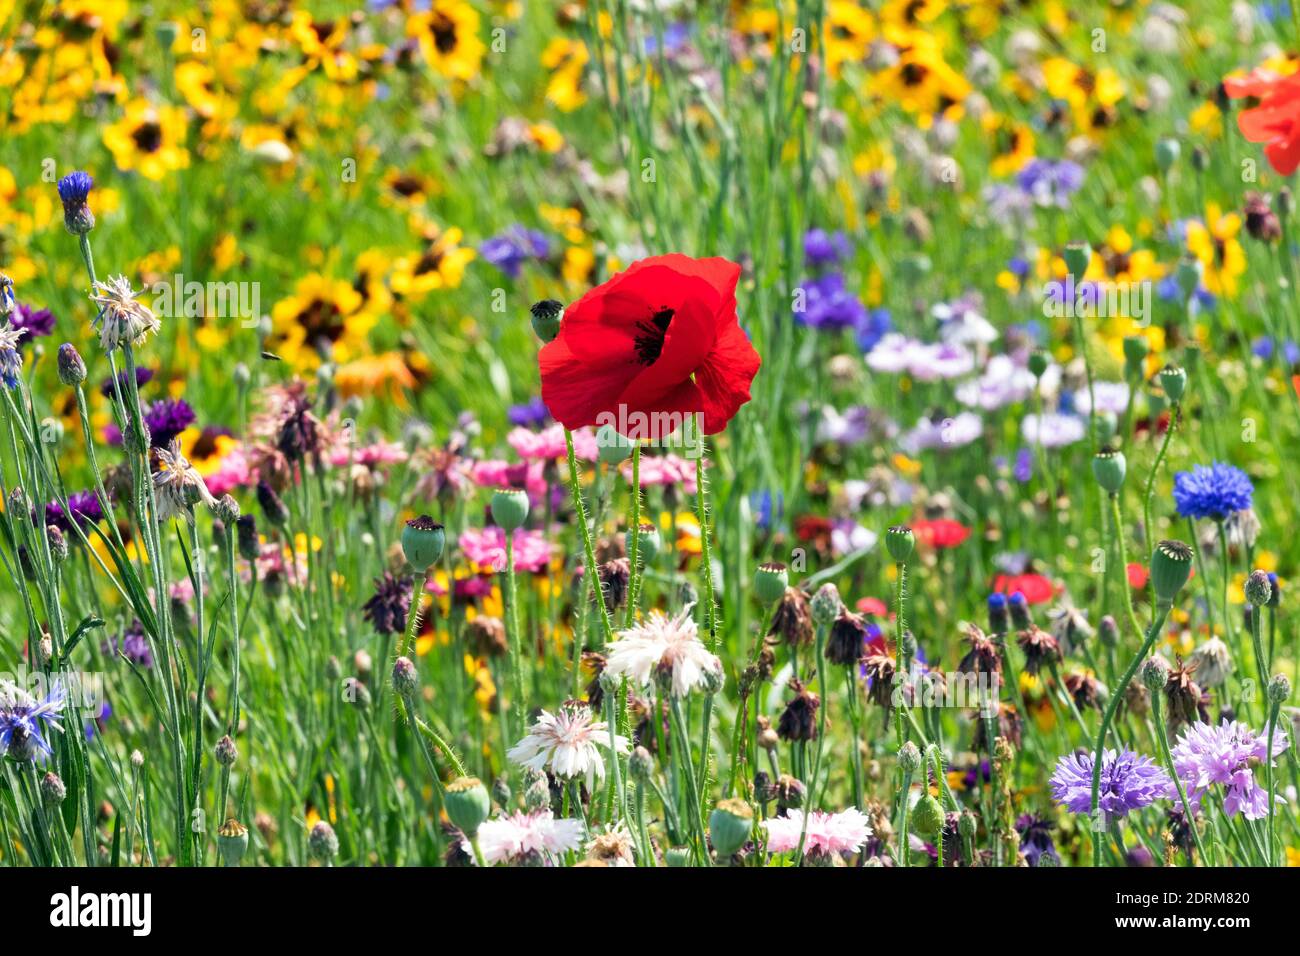 Sommerblume Wiese Roter Mohn gemischte Pflanzen Bunte Wildblume Wiese Gartenblumen Papaver Rhoeas Rot Gelb Grün Blau blühende Juli gemischte Blume Stockfoto